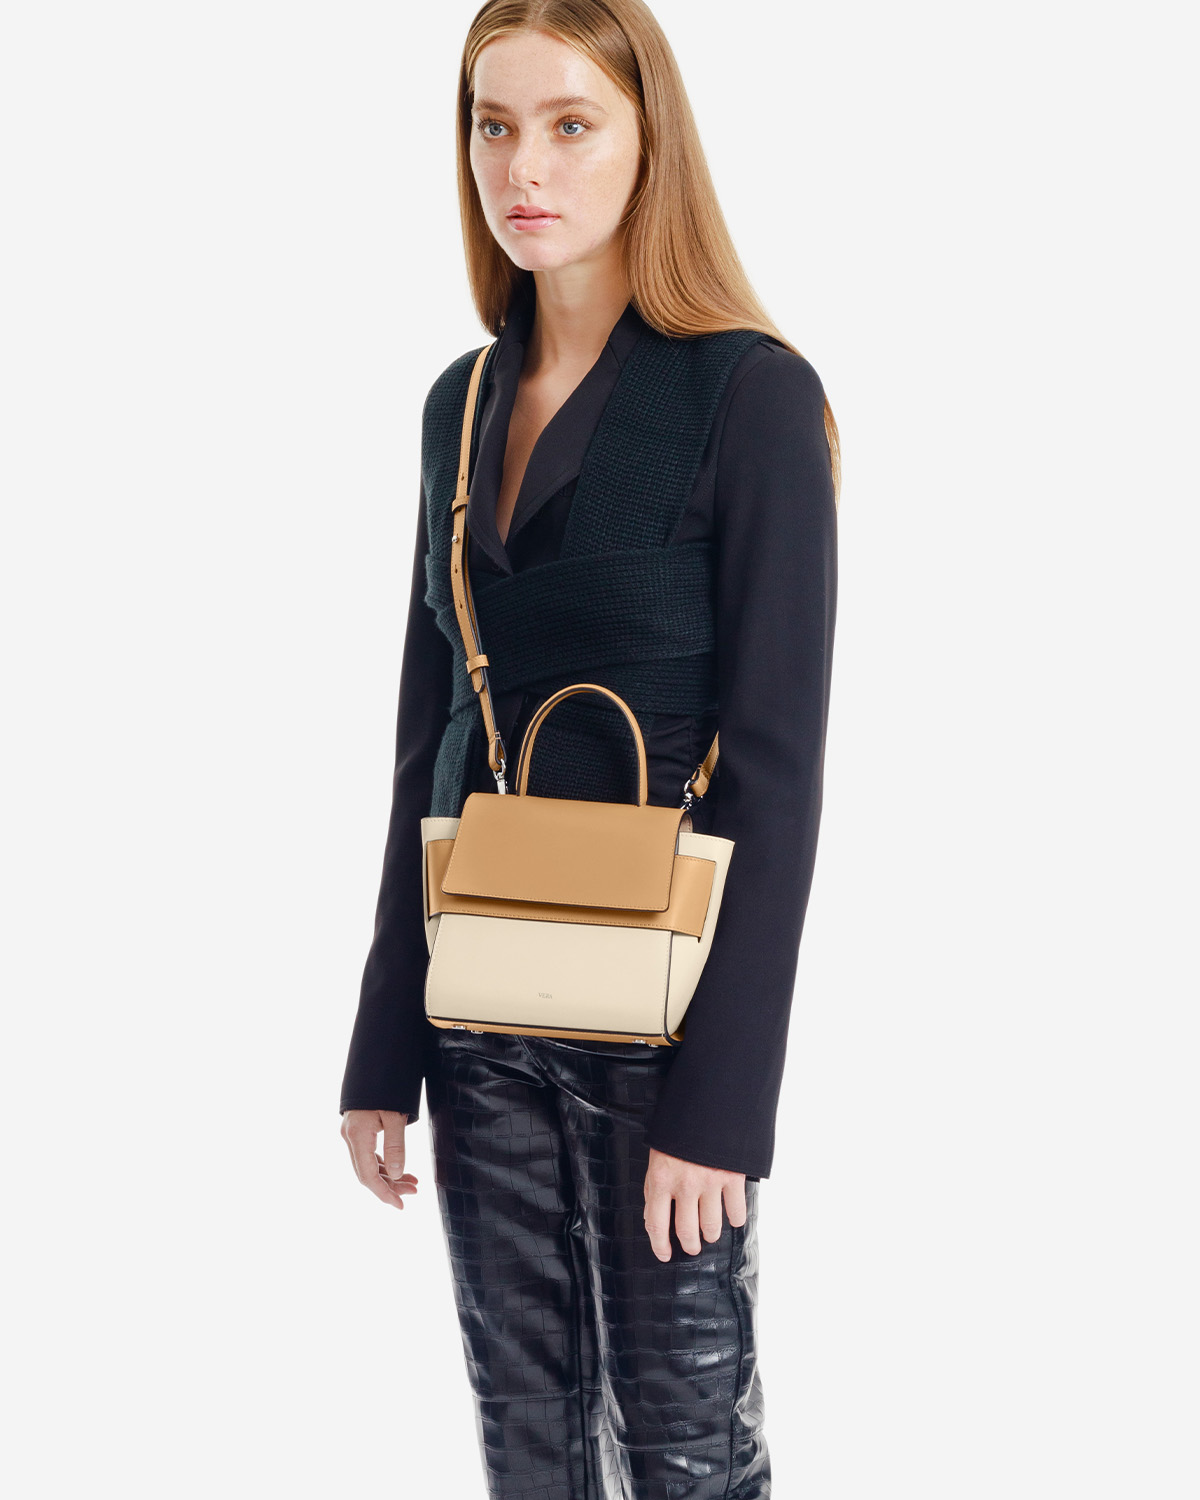 VERA Margo Leather Handbag, Size 20 in Beige Butterscotch